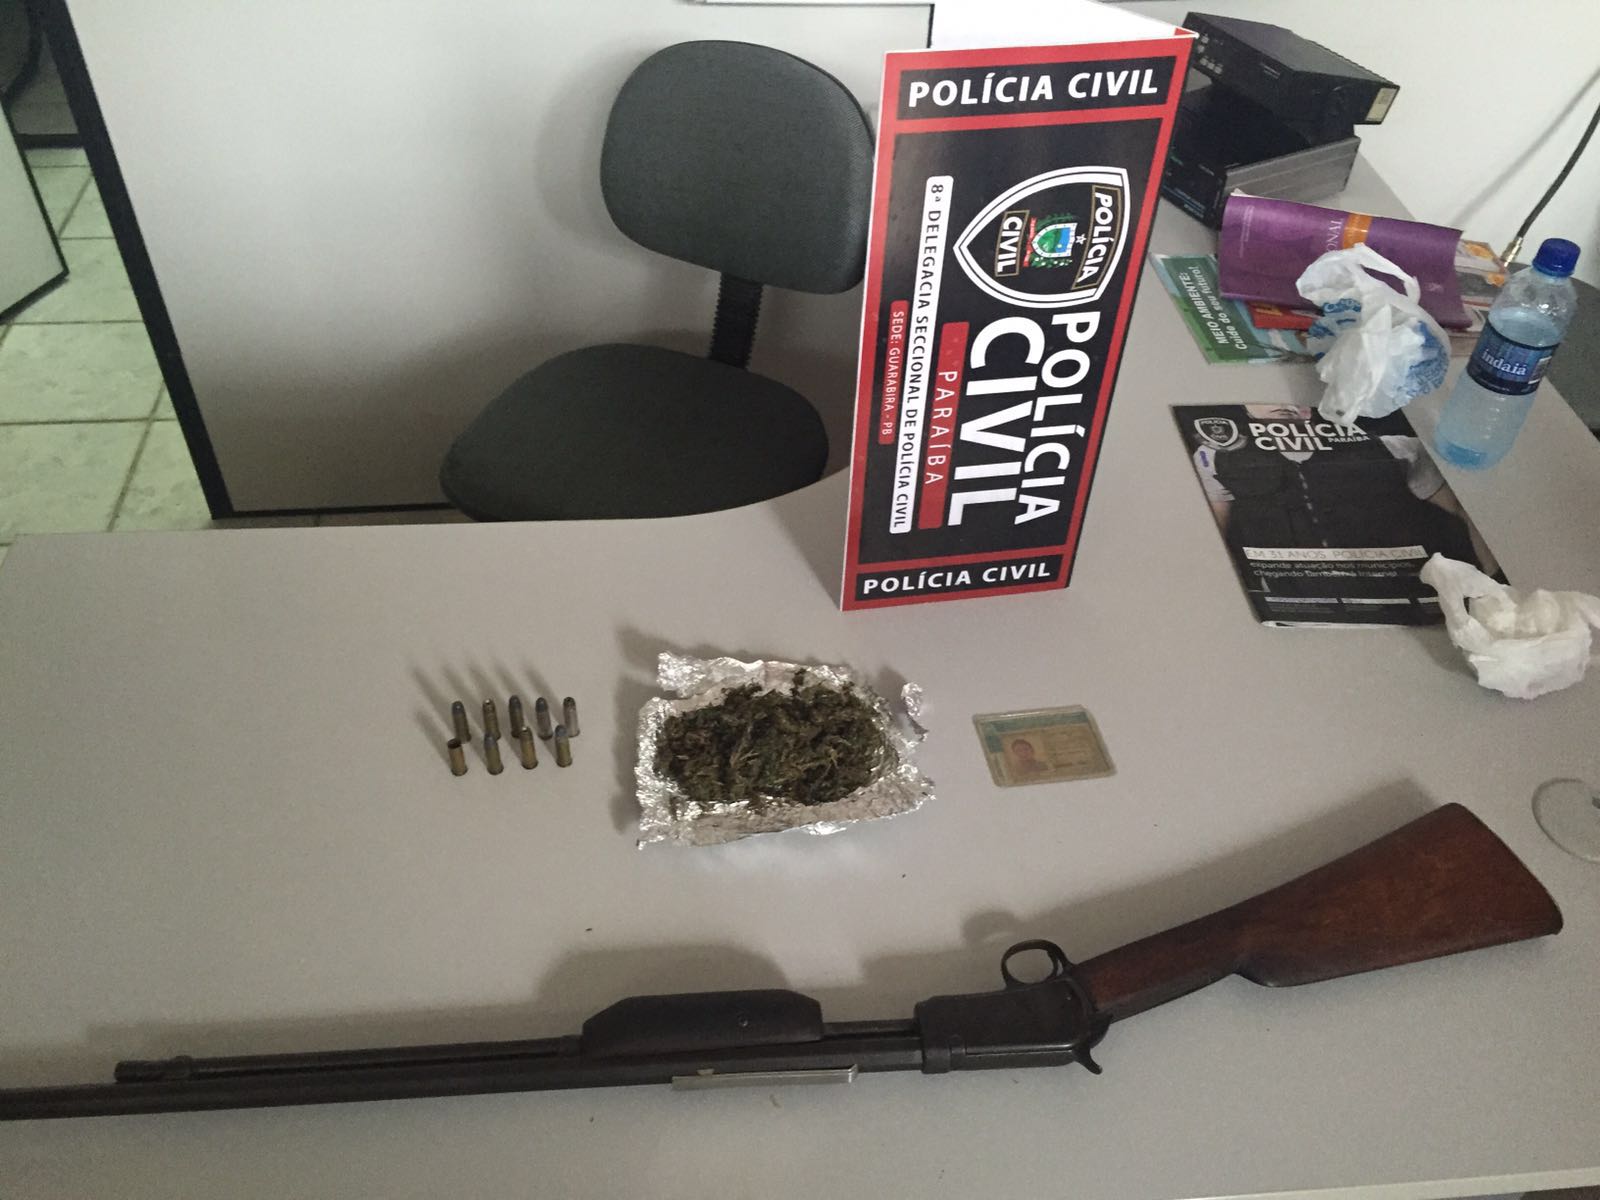 Policiais apreenderam arma e droga com o suspeito Foto: Divulgação/Polícia Civil)